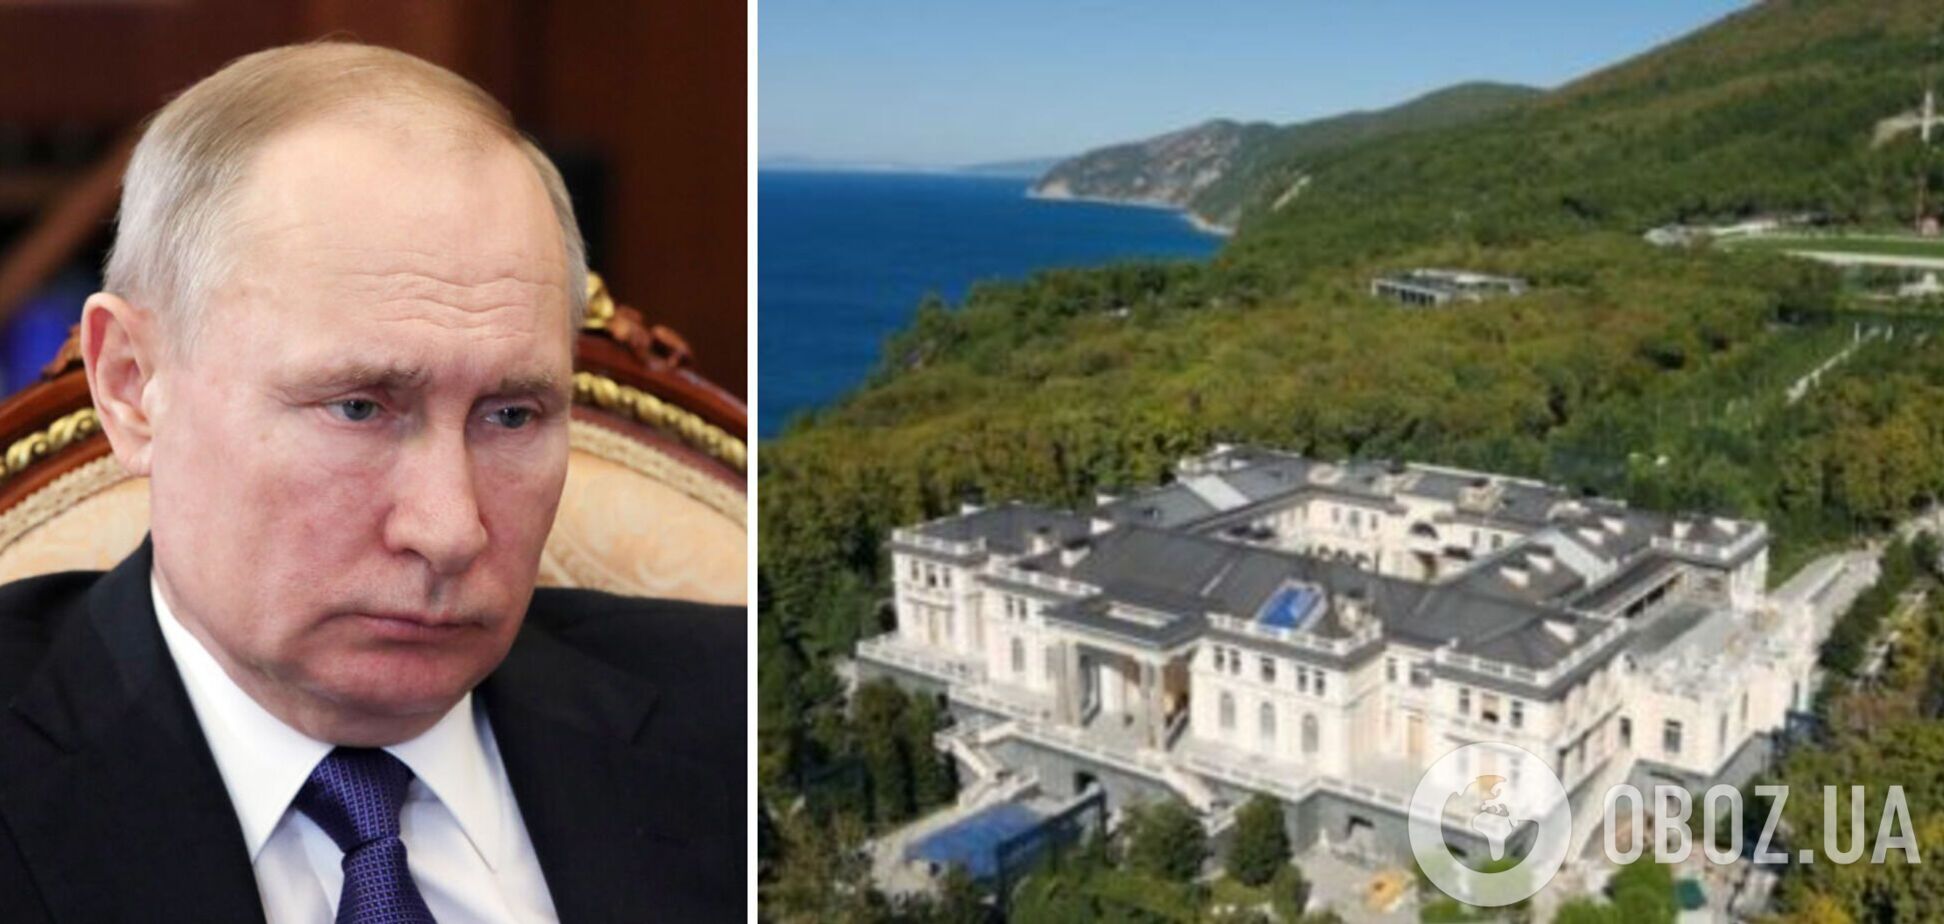 Реальные фотографии законченного после строительства дворца Путина выложили в сеть